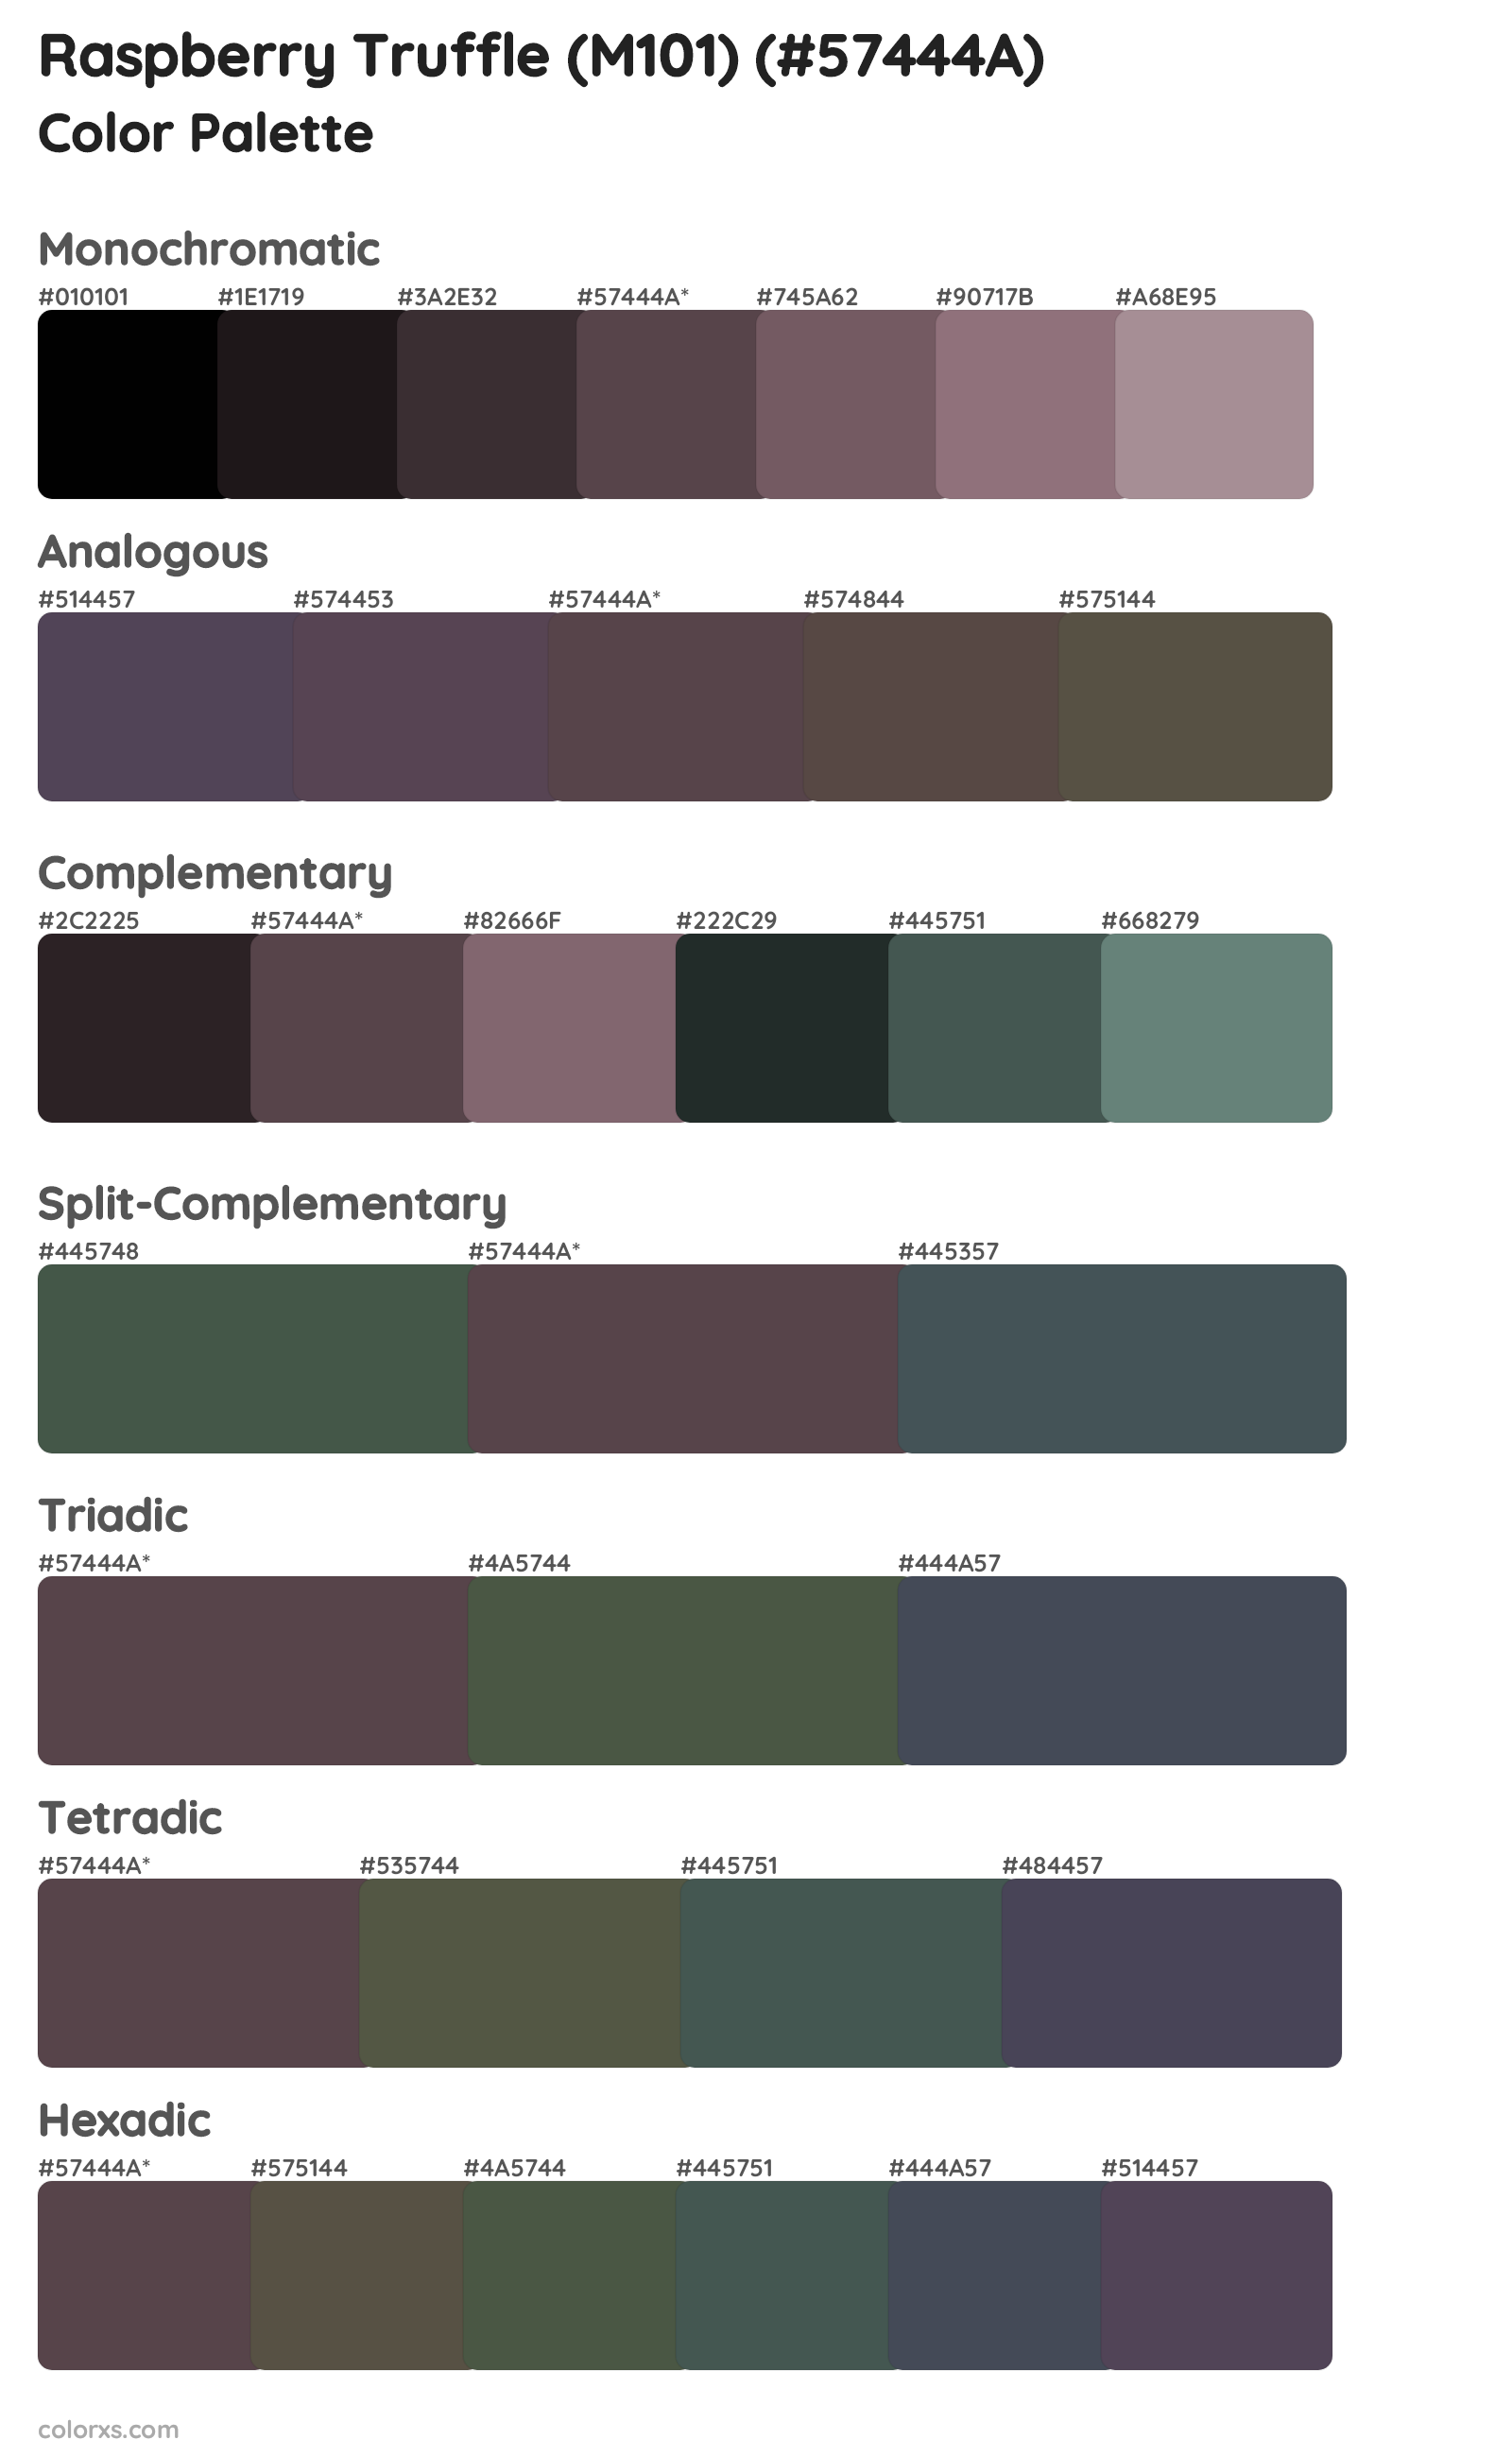 Raspberry Truffle (M101) Color Scheme Palettes